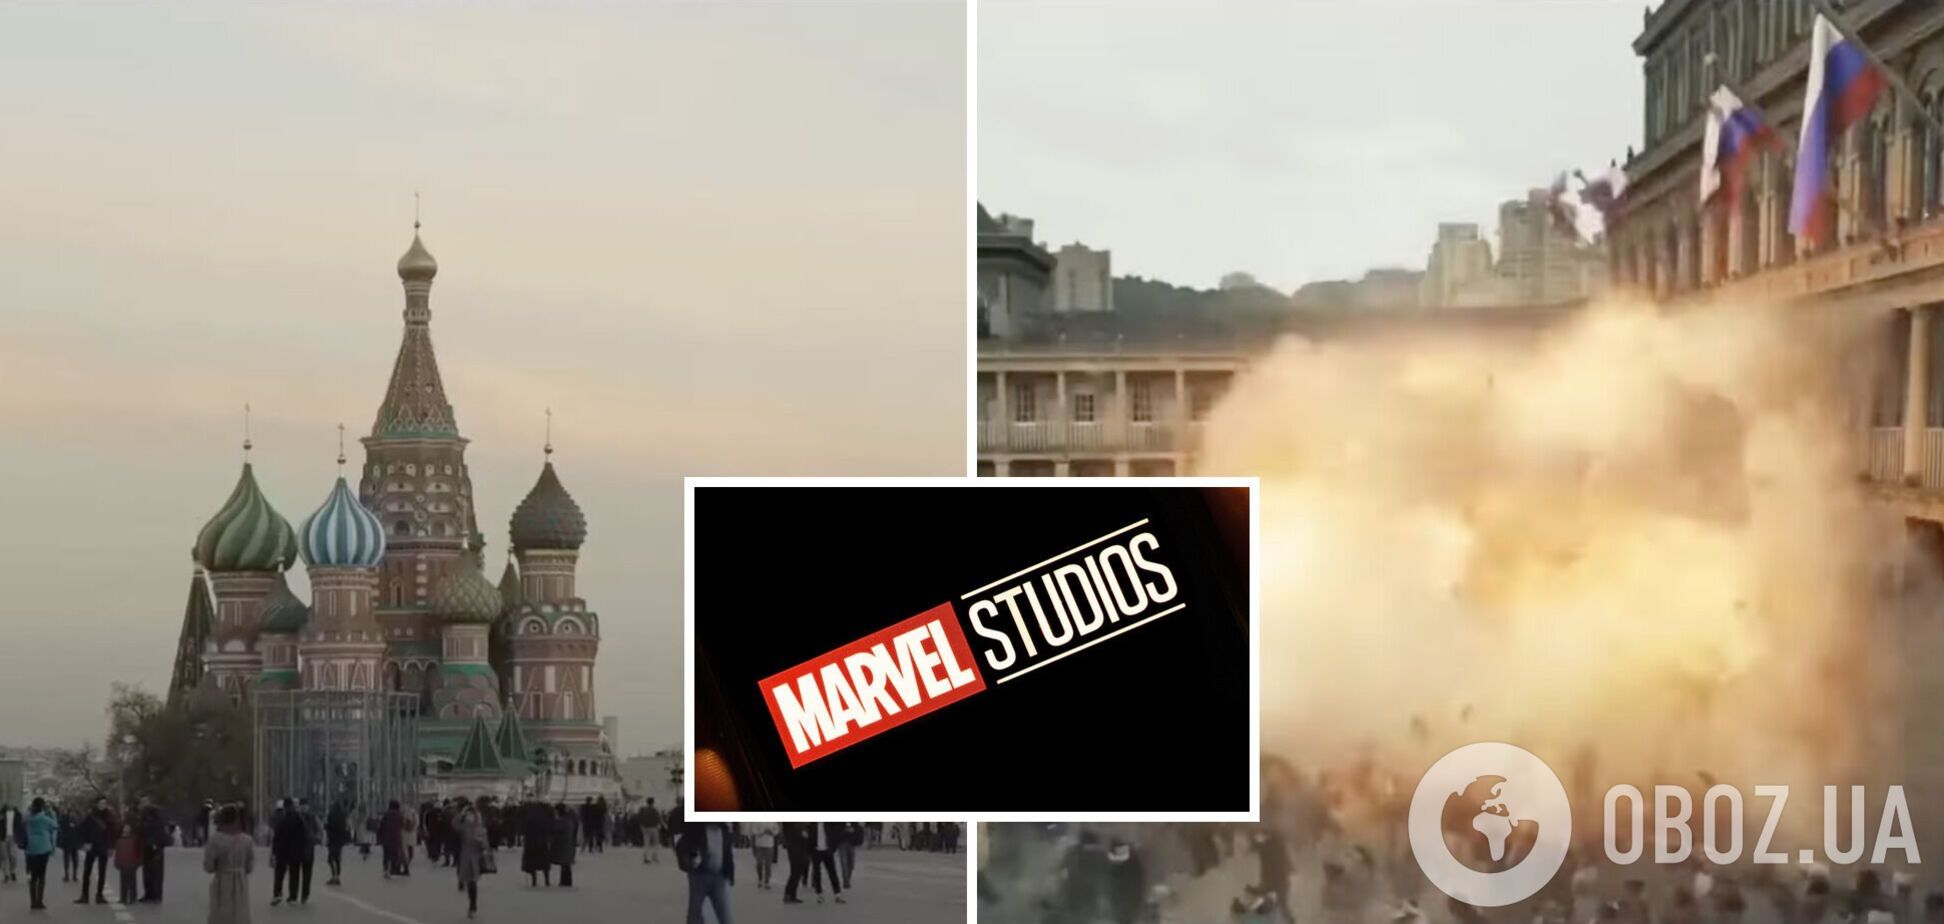 'Это спойлер?' Marvel показала взрывы в Москве в новом сериале 'Тайное вторжение' на фоне слухов о контрнаступлении ВСУ